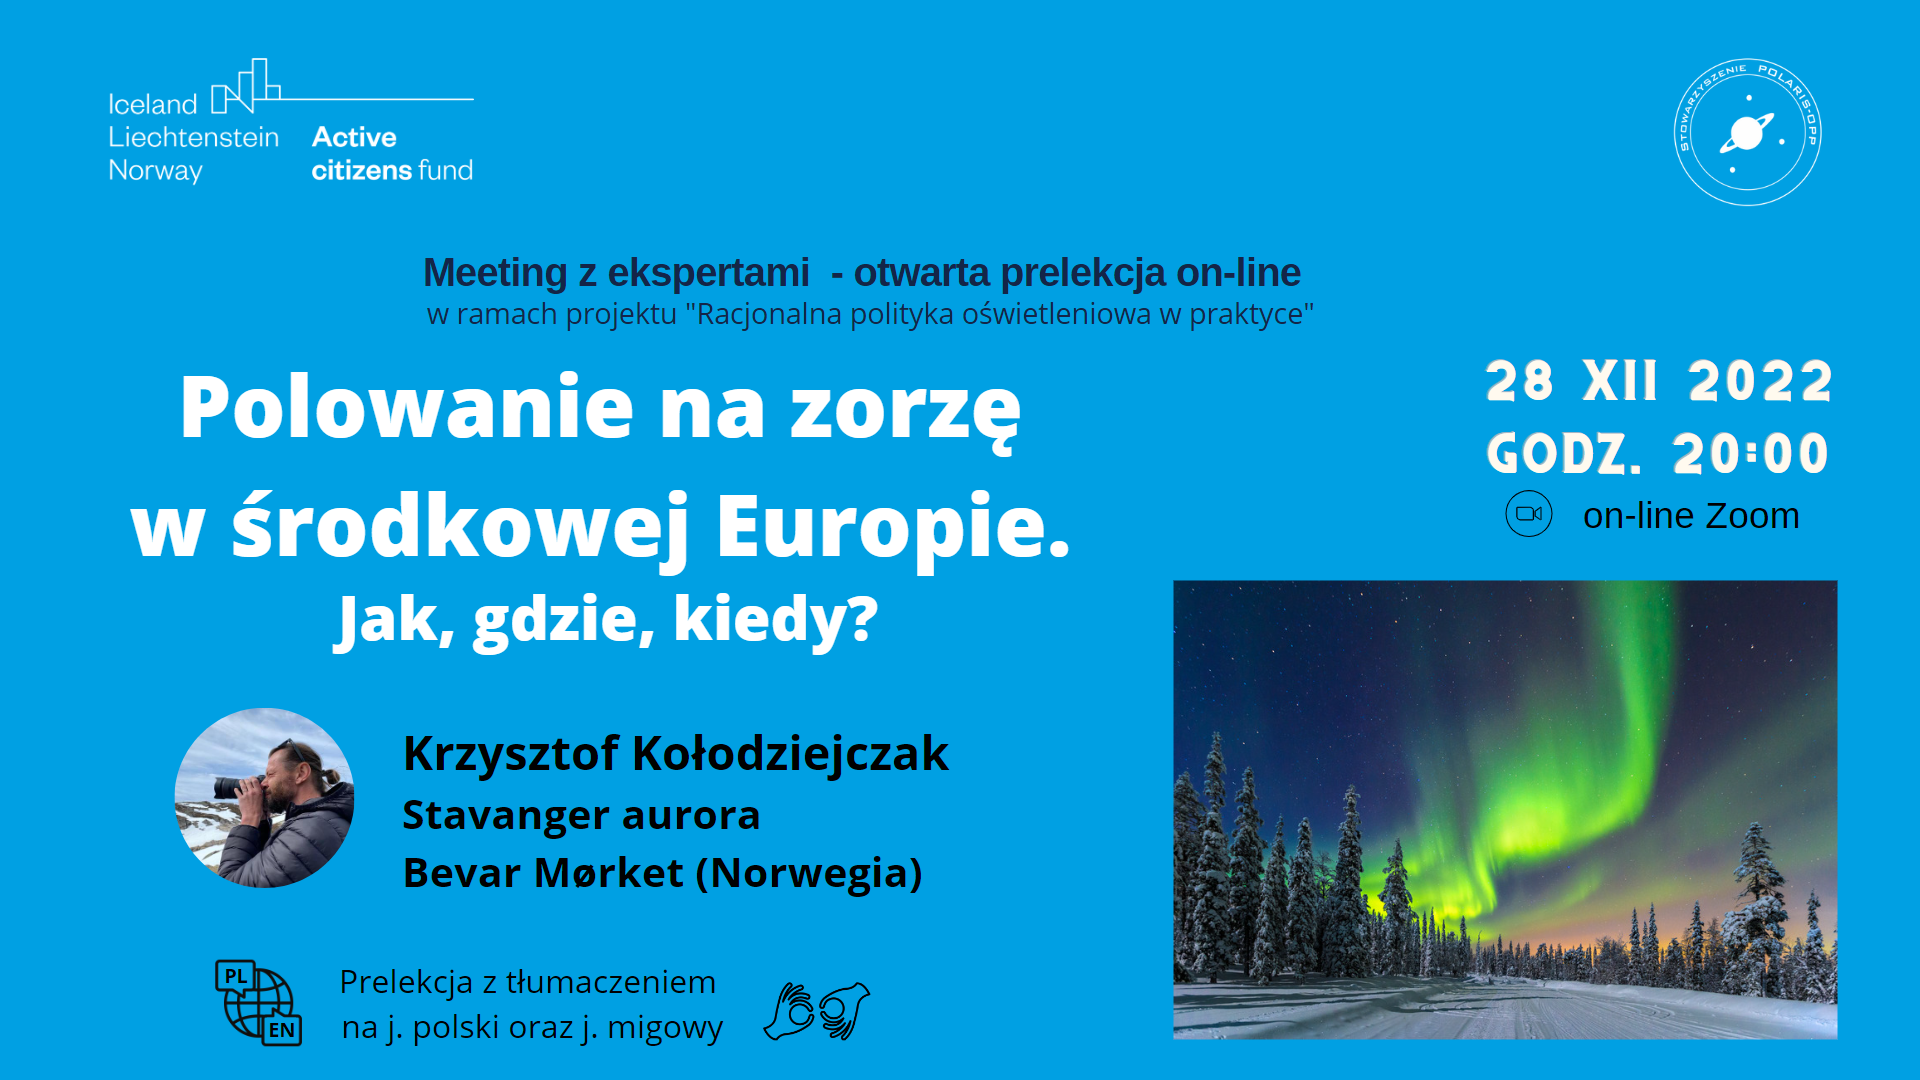 Meeting z ekspertem - Krzysztof Kołodziejczak z Bevar mørket, Norwegia. [#121] Czas: 28 gru 2022 20:00 Stavanger / Sopotnia Wielka